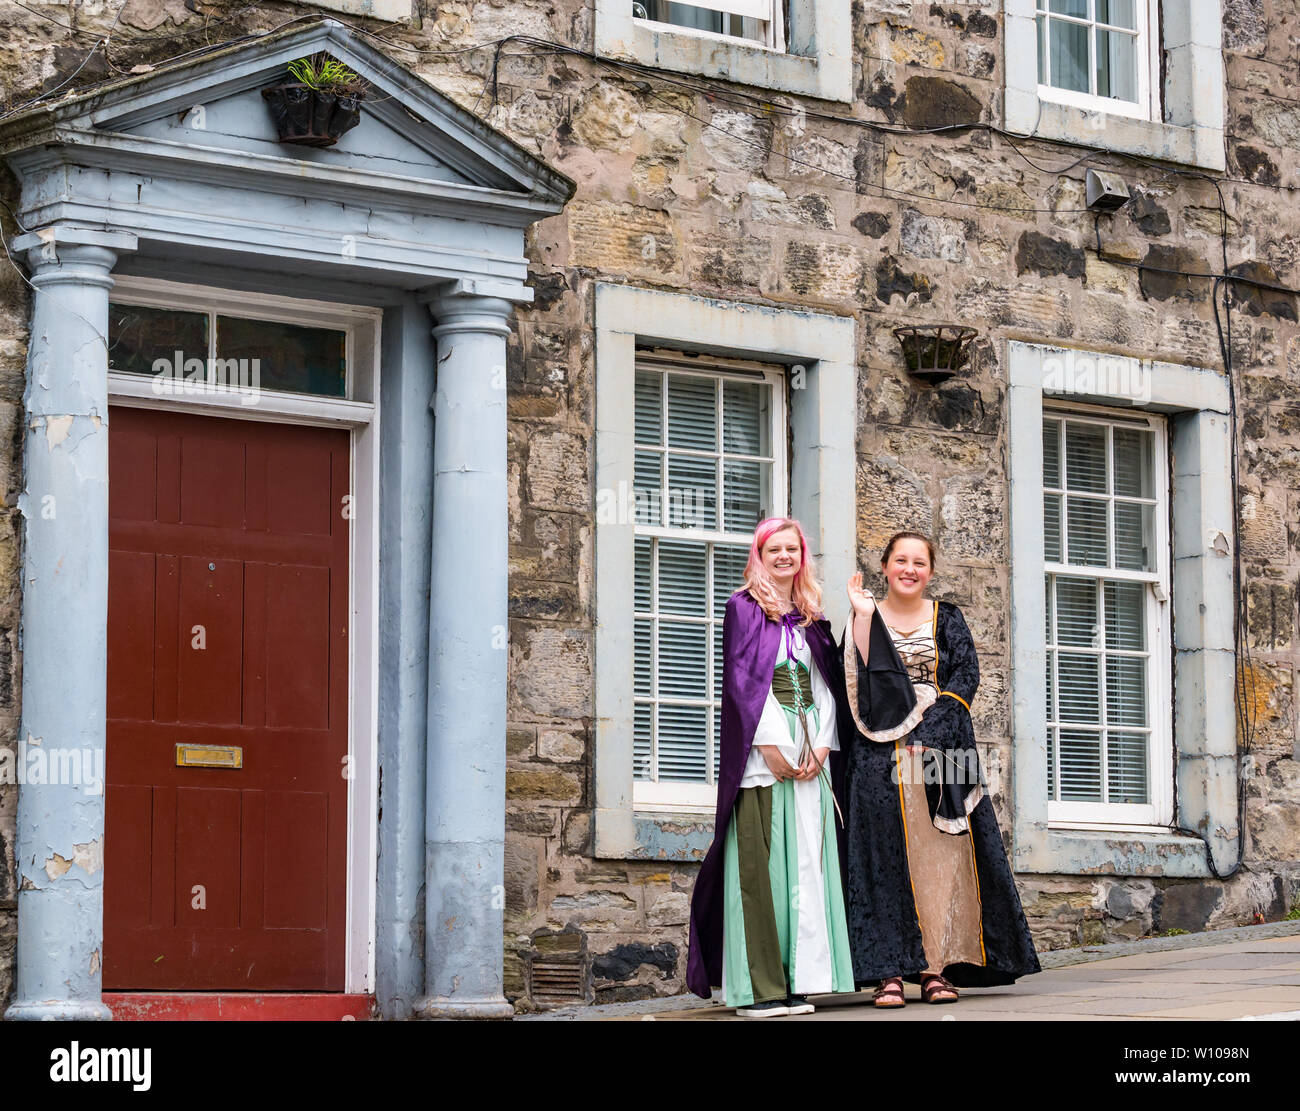 Junge Frauen in historischen Kostümen für Touristen Altstadt gekleidet, Stirling, Schottland, Großbritannien Stockfoto